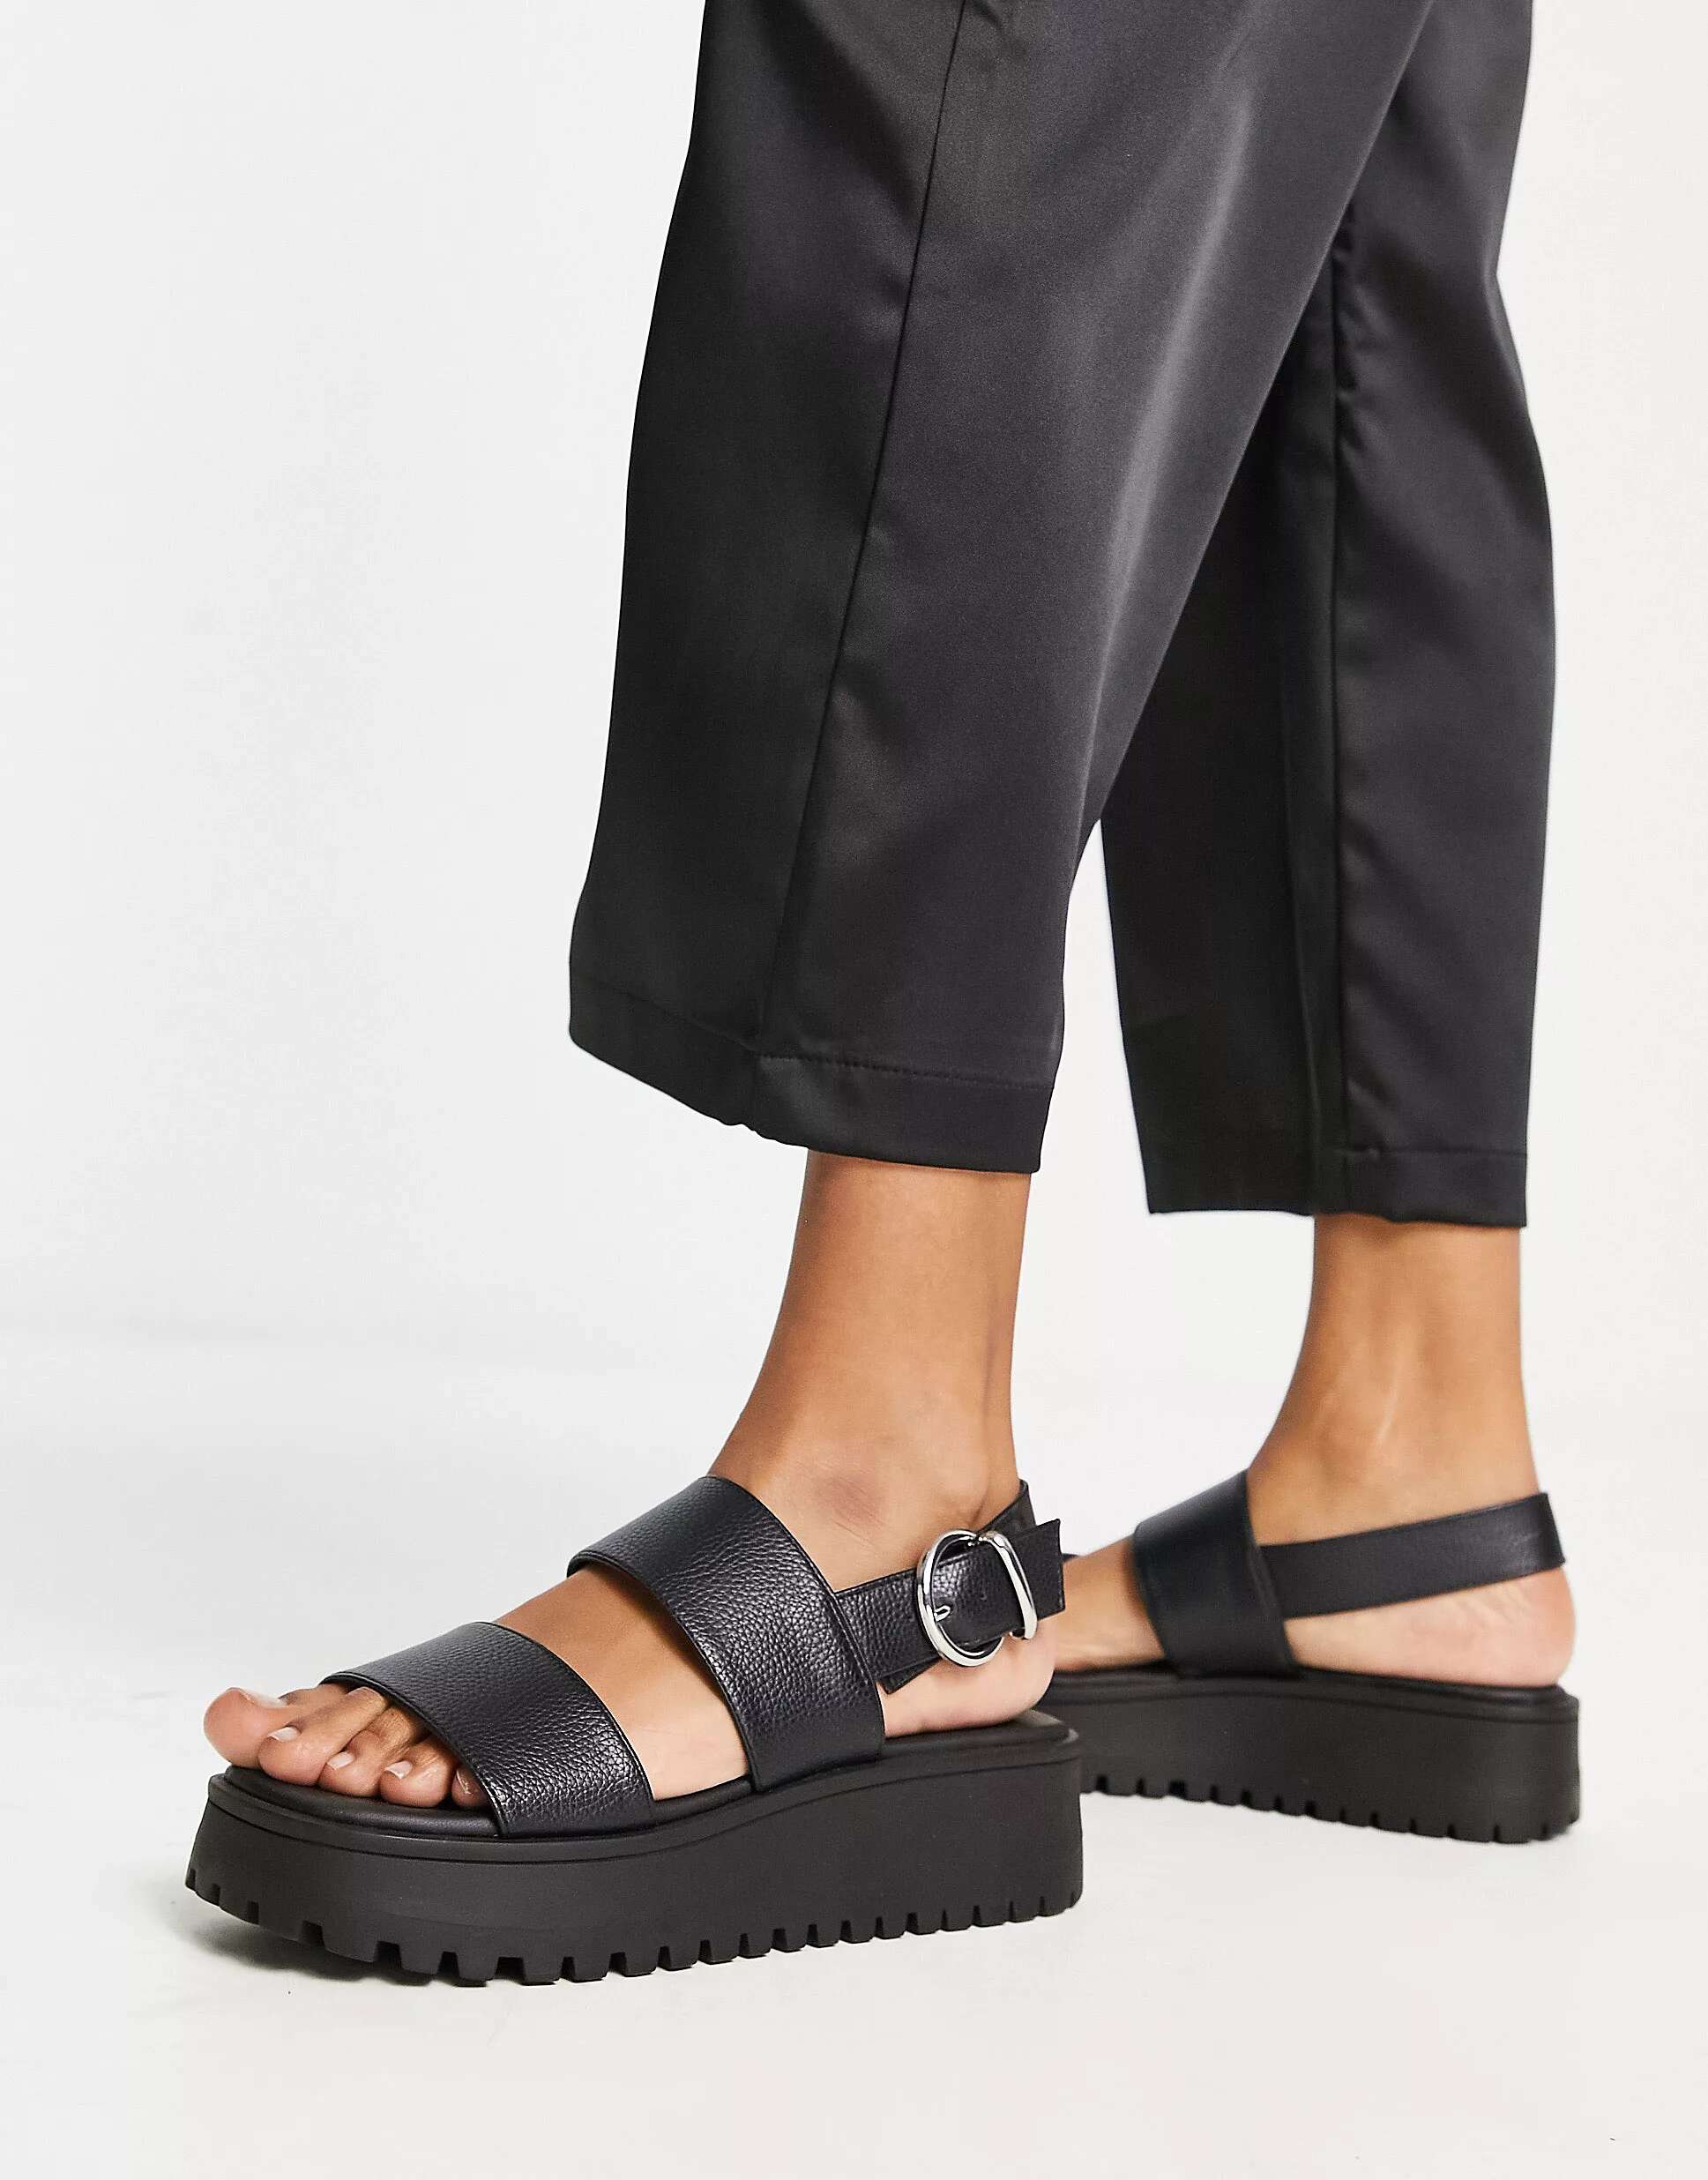 Черные двухсекционные сандалии Schuh Tanya двухсекционные модельные сандалии paycee style